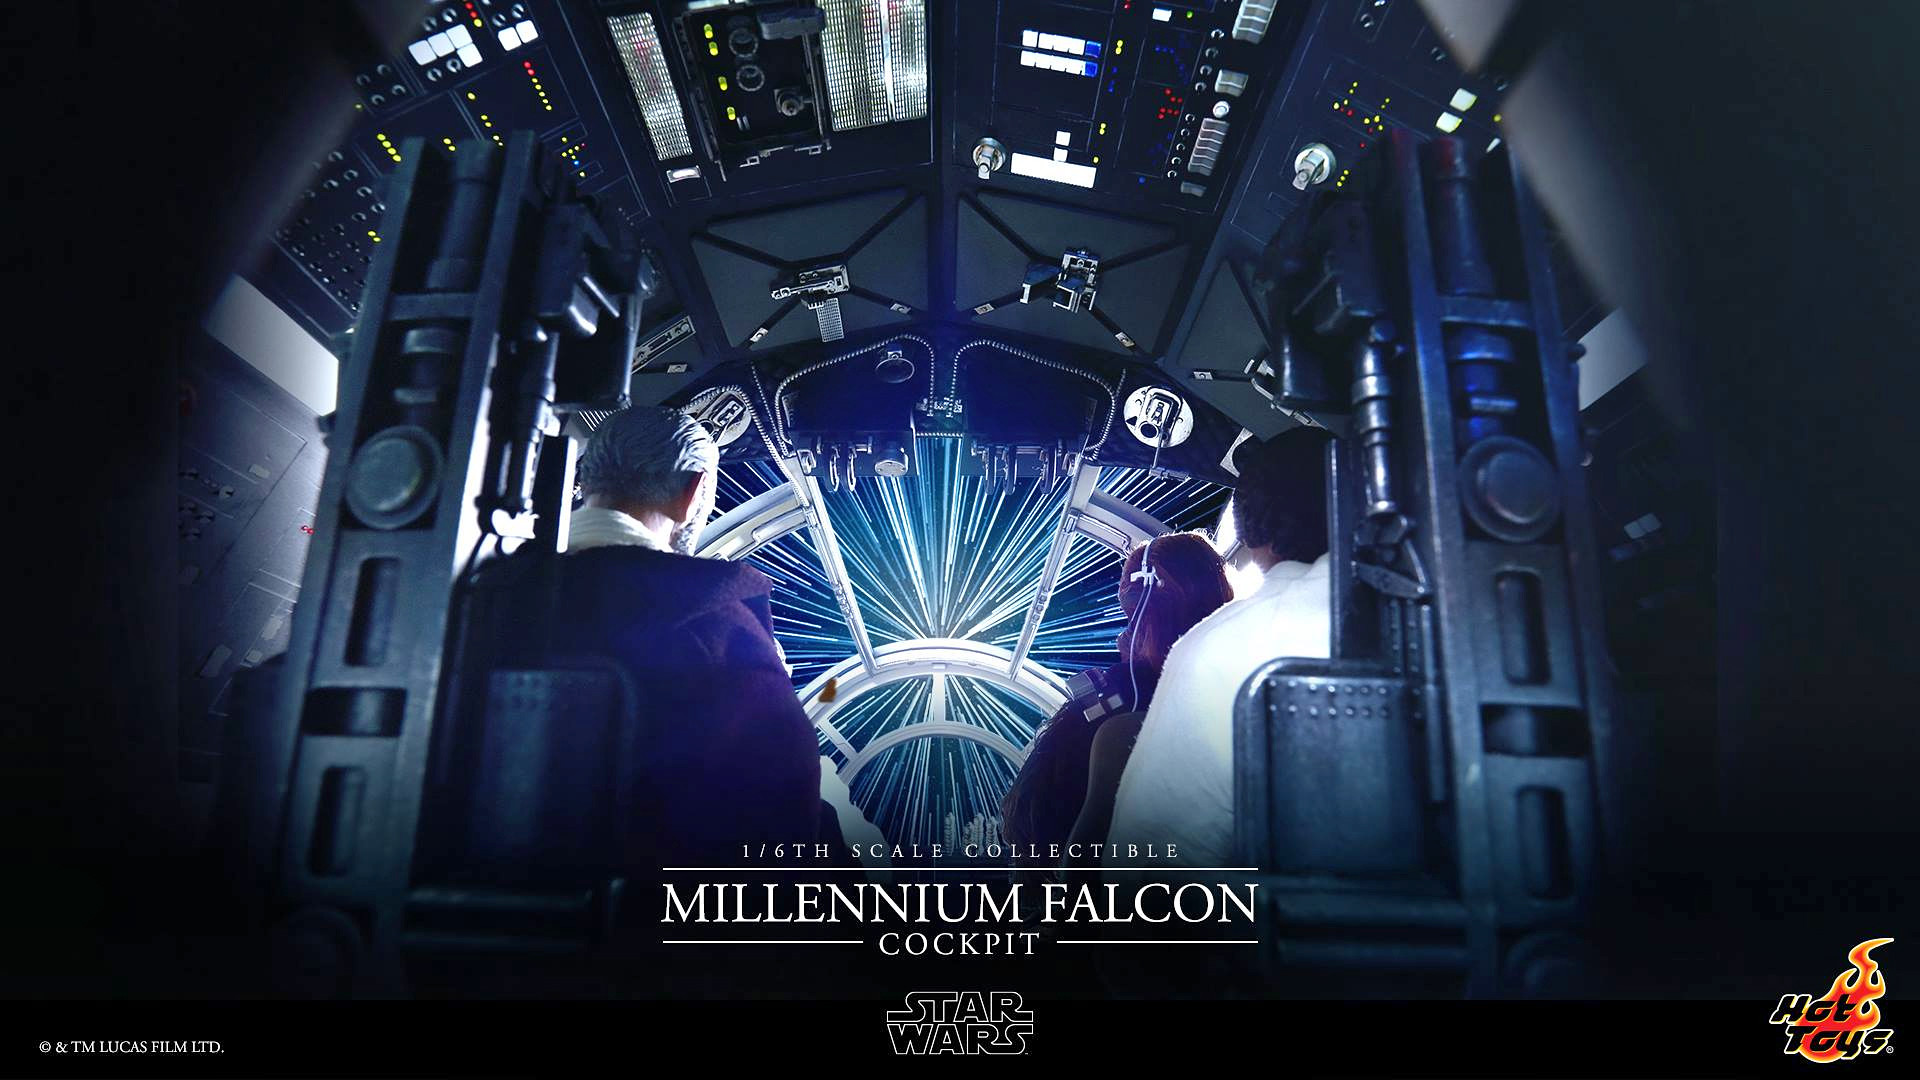 Millennium Falcon Star Wars Minimalist Digital Art 4K Wallpaper 27